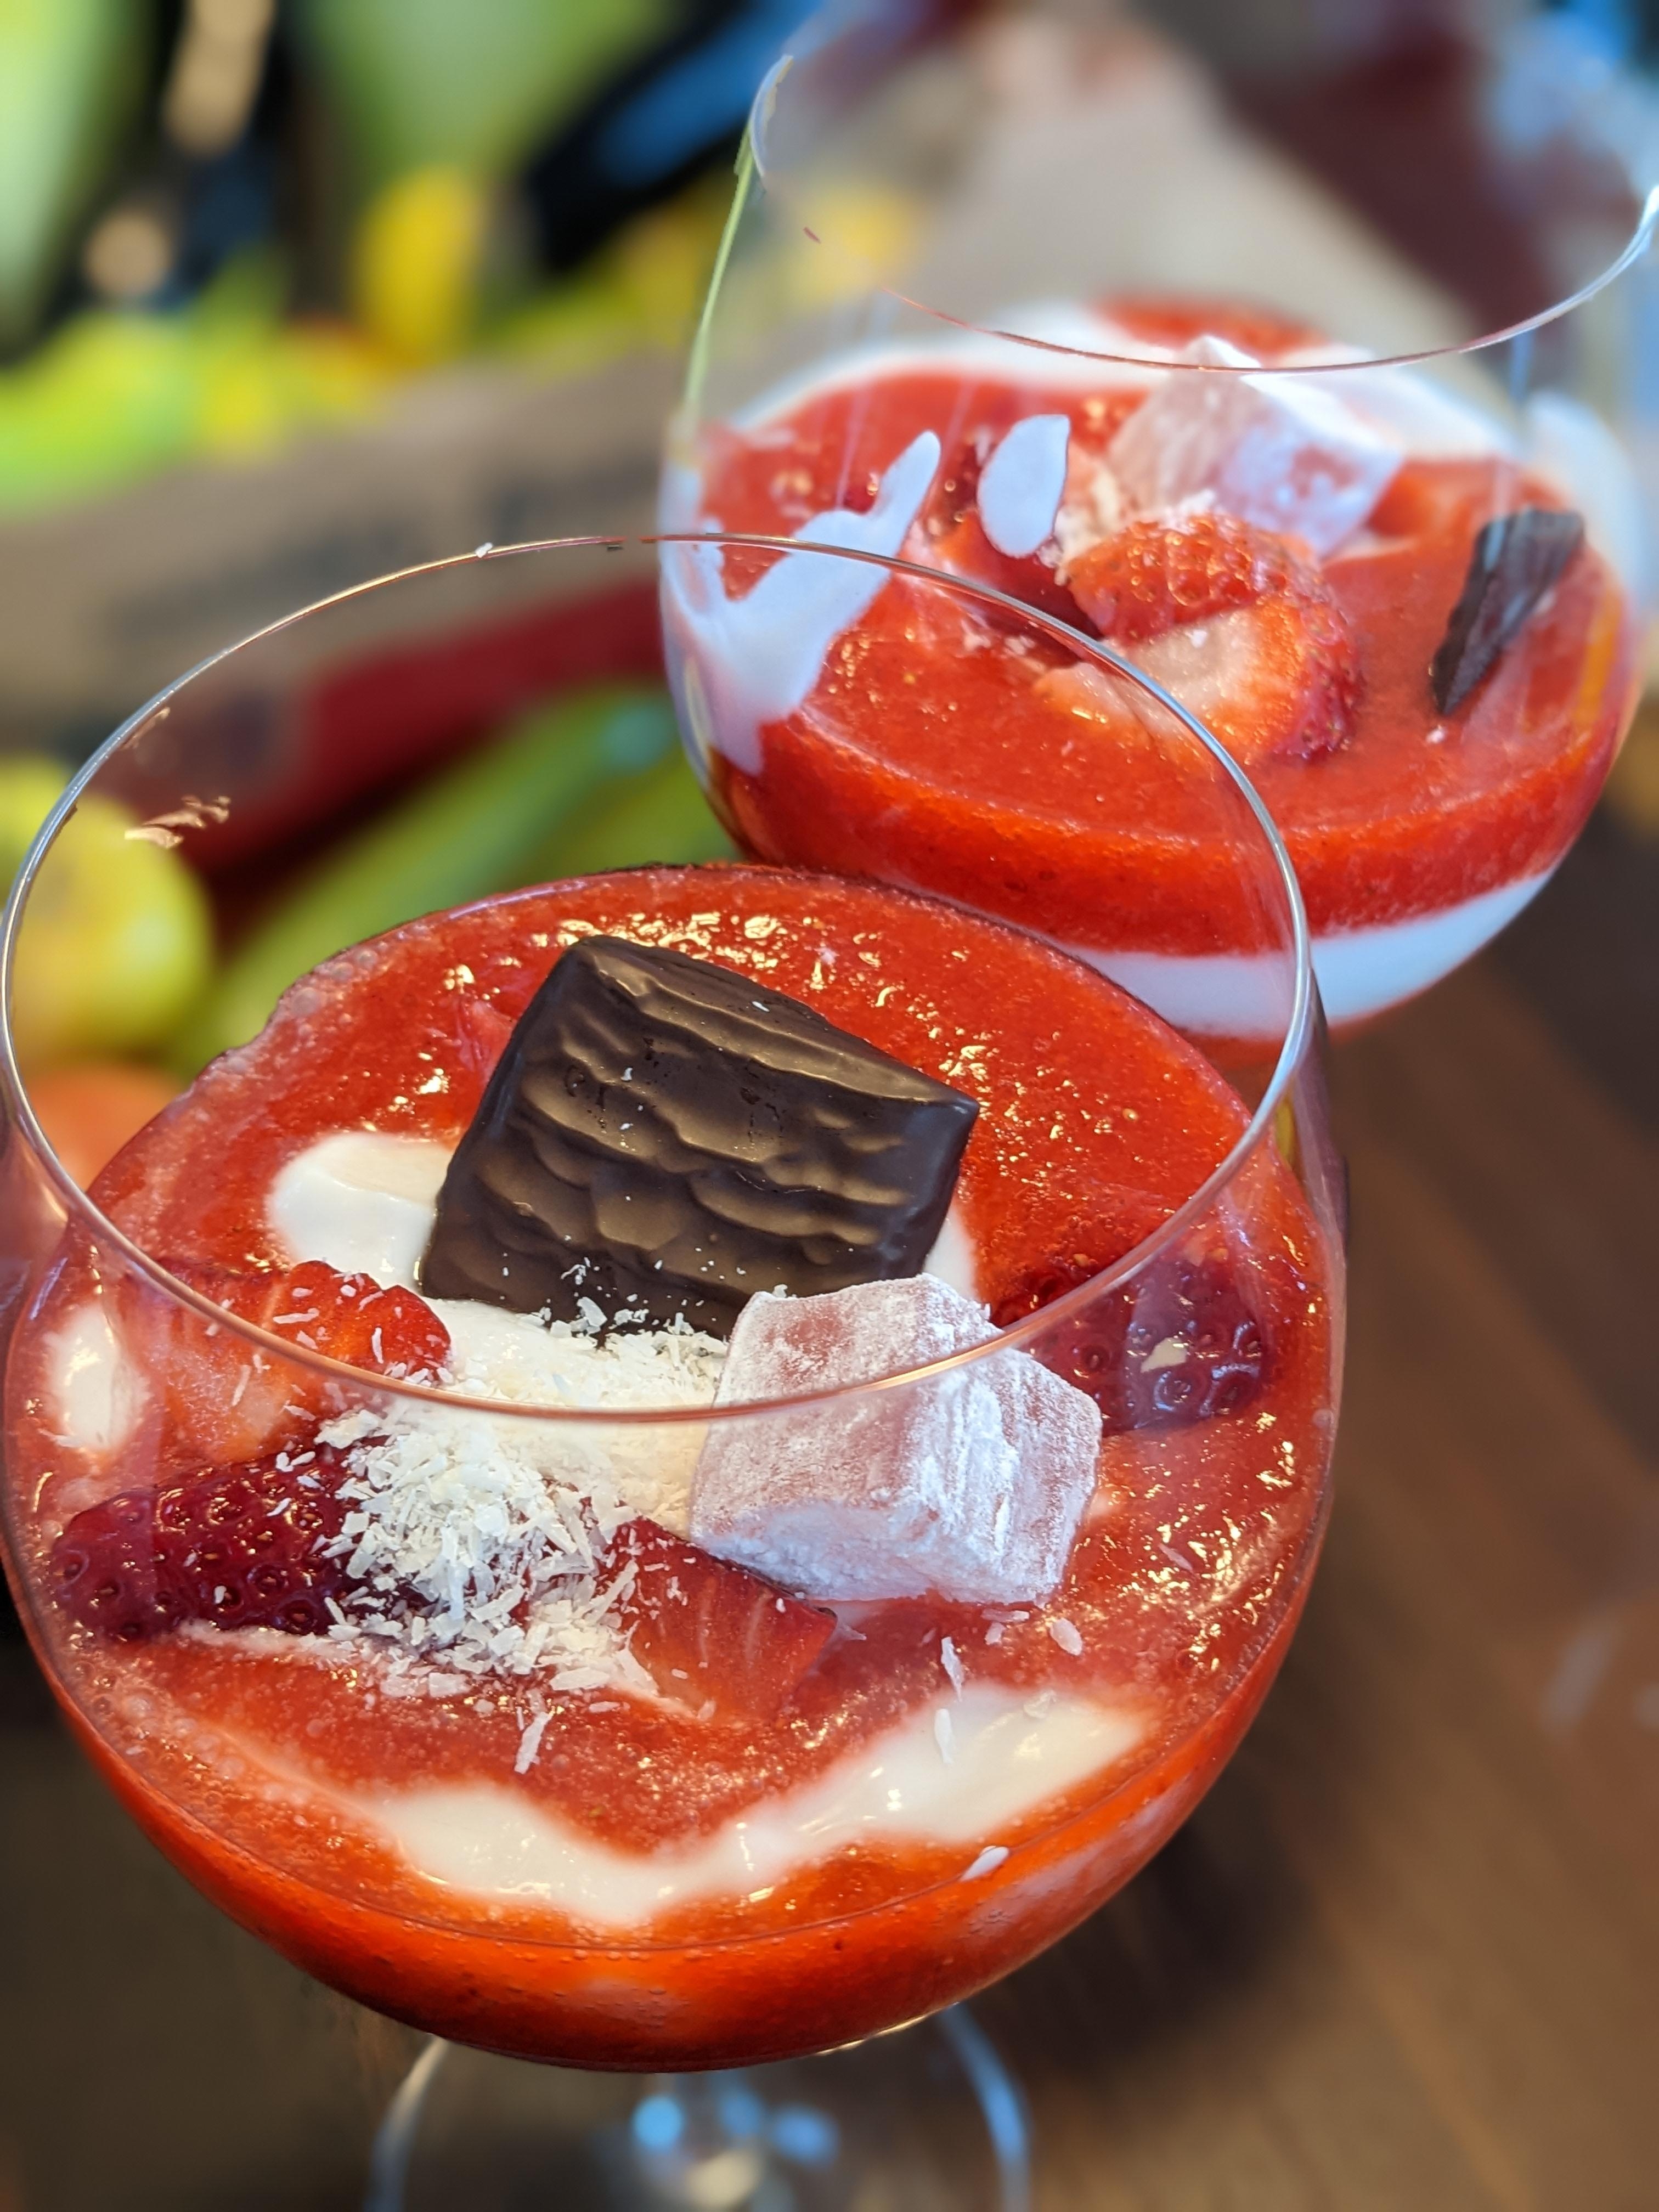 🥥🍓Vegan: Kokos-Erdbeer-Dessert mit Lokum und After Eight
#rezept #food #erdbeeren